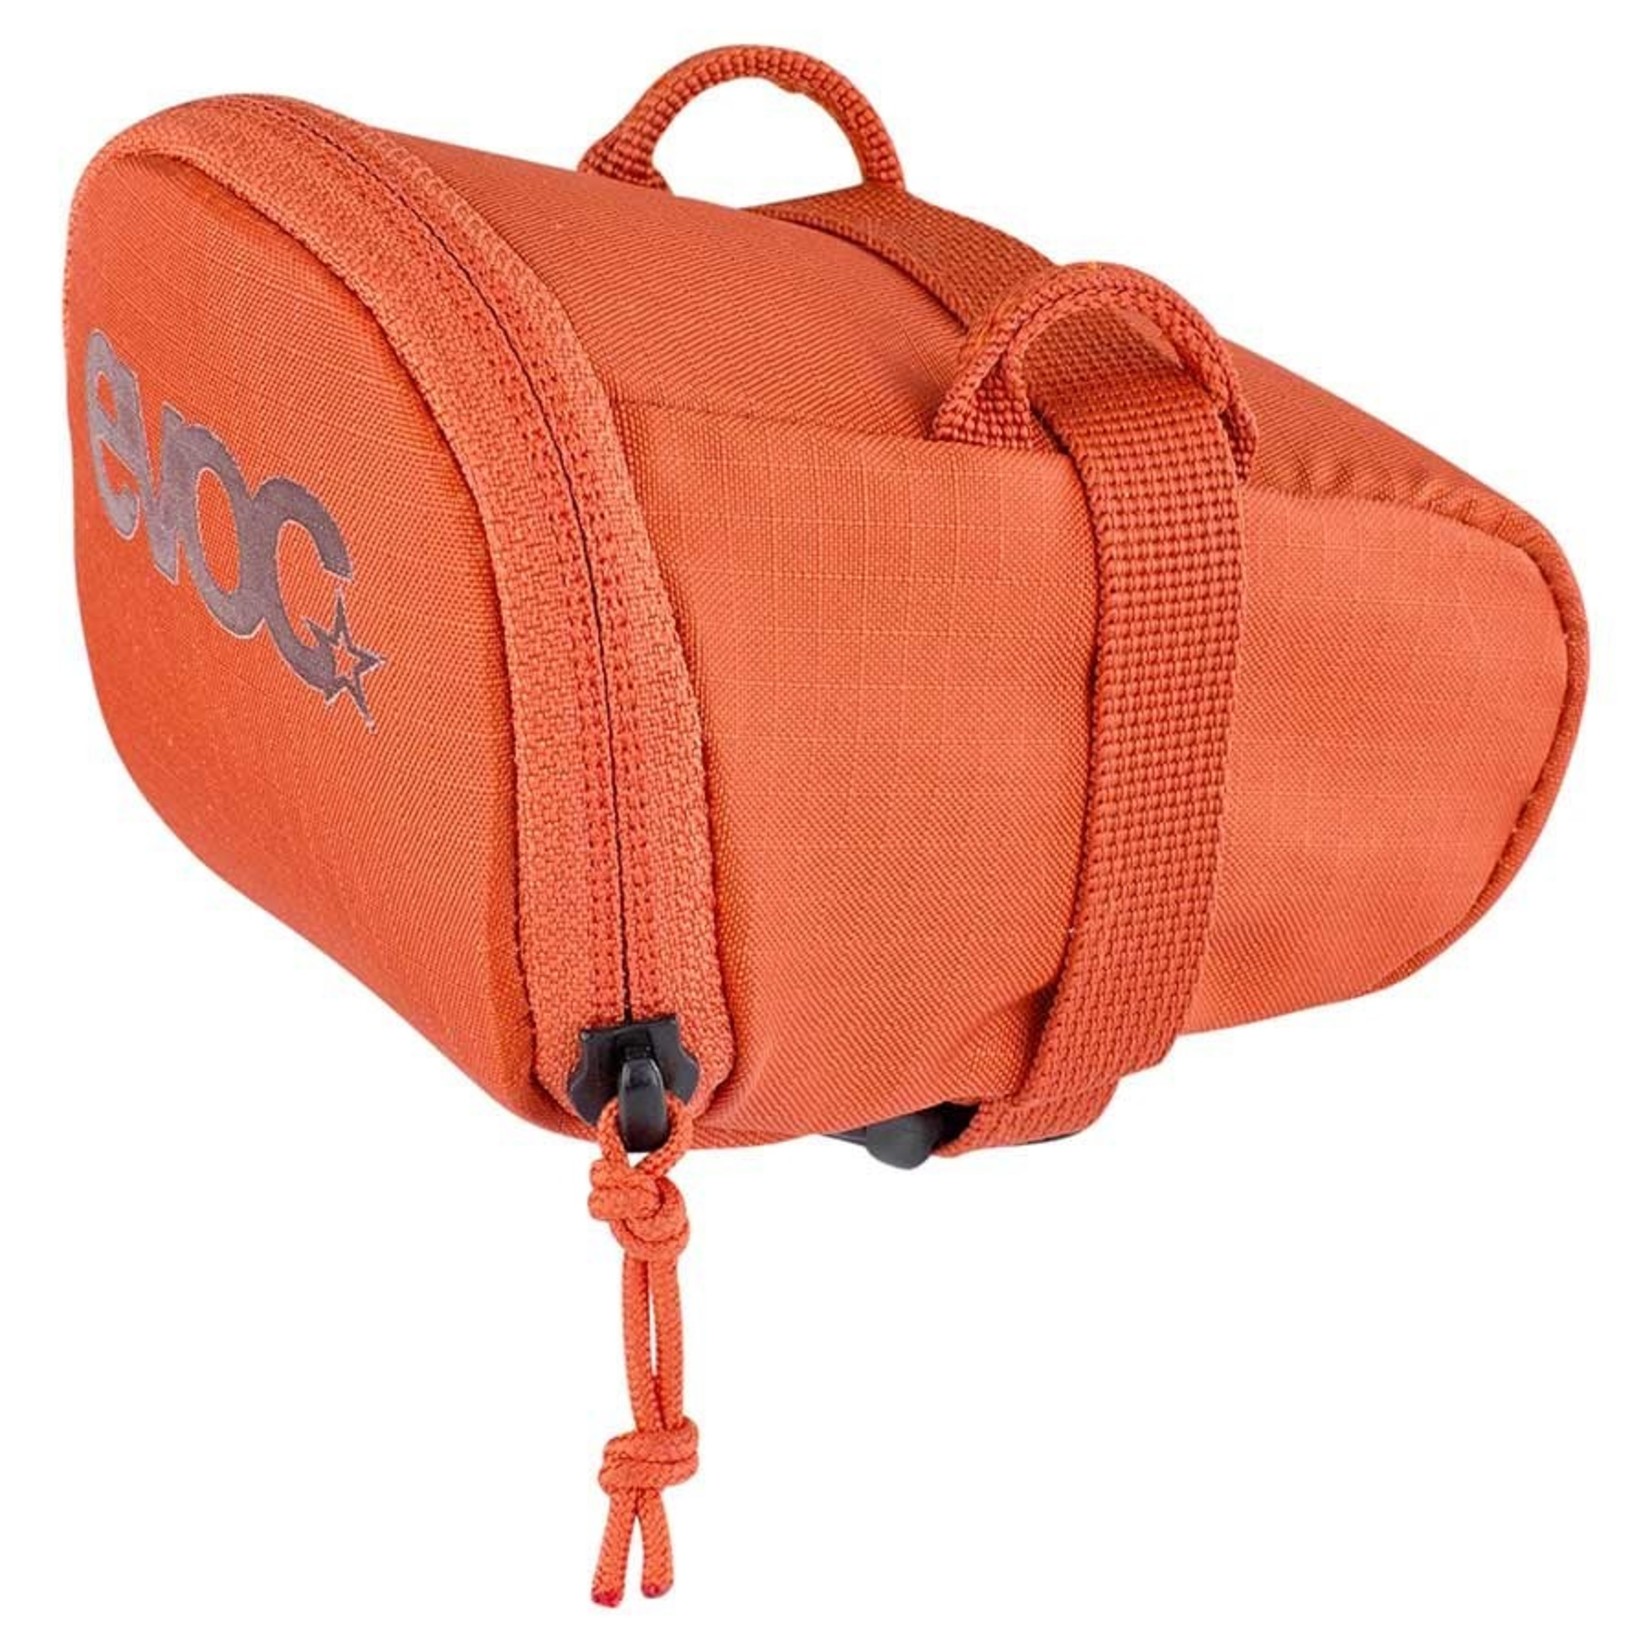 EVOC EVOC, Seat Bag, Small, 0.3 L, Assorted Colours